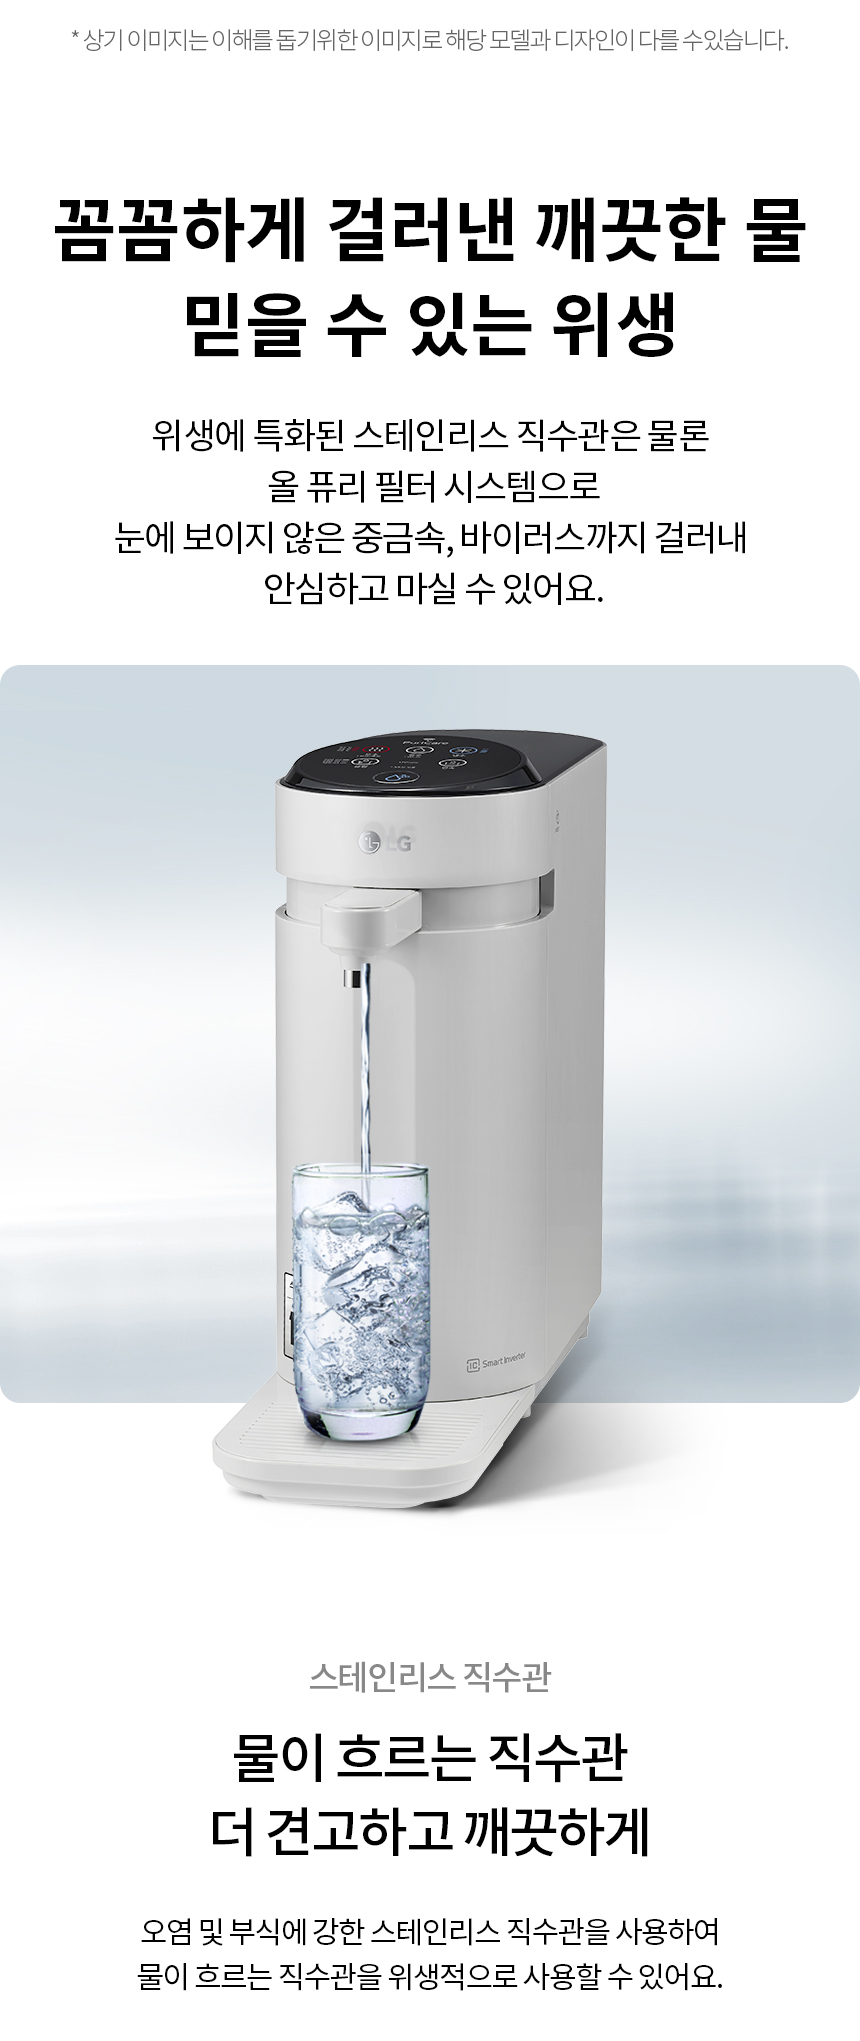 LG 퓨리케어 WD526AST 정수기(스윙, 냉온정, 그레이) 상세정보4